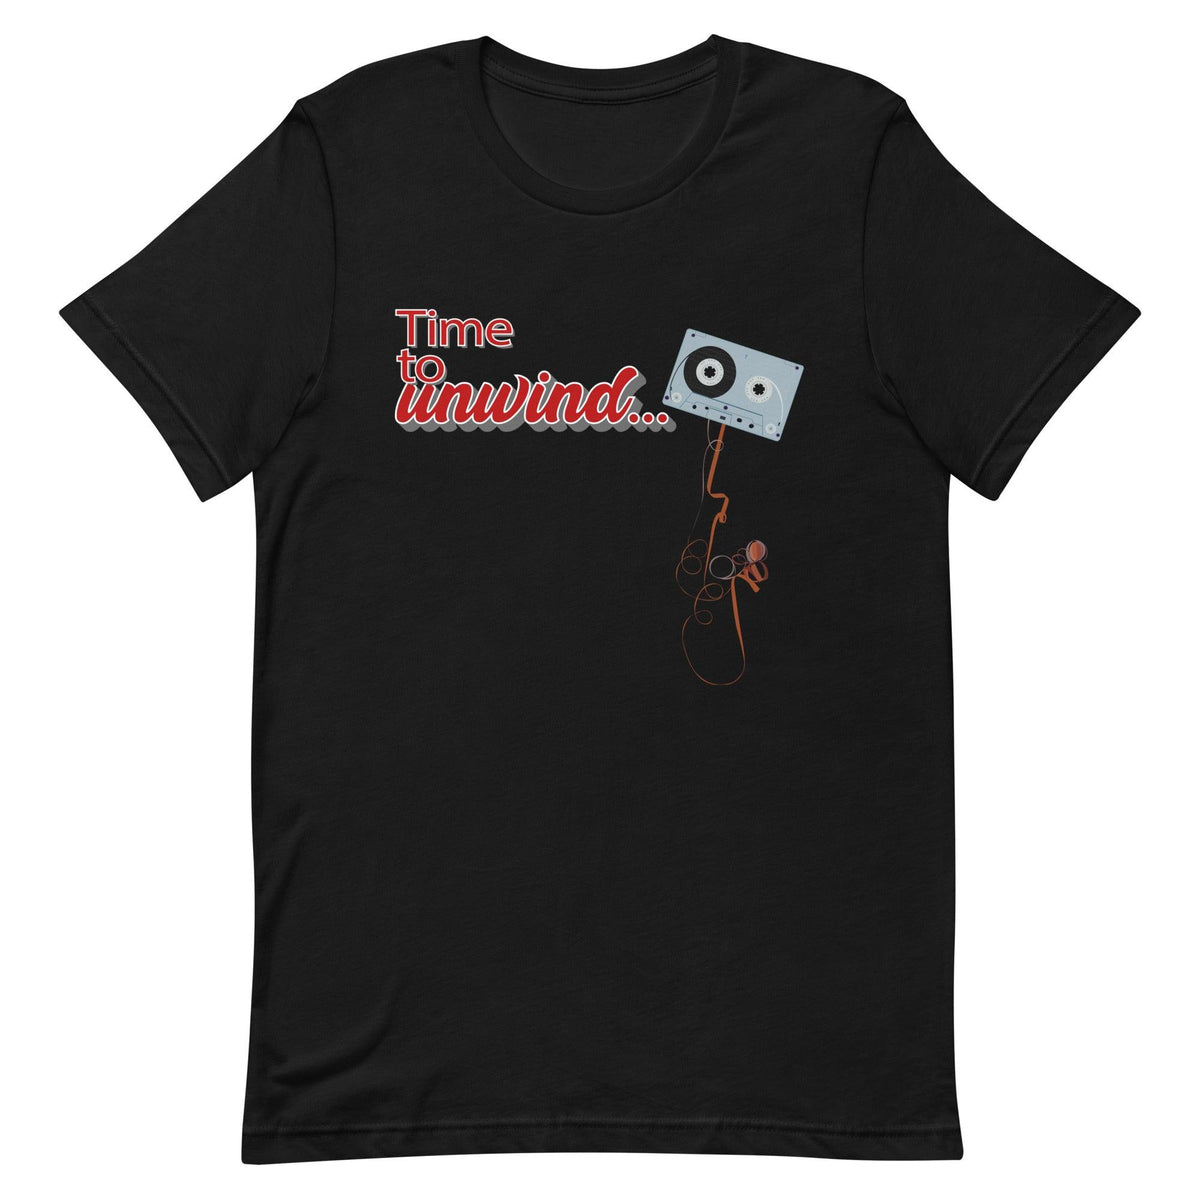 Funny Cassette Tape Time to Unwind Unisex T-Shirt (XL-5XL) - Tedeschi Studio, LLC.